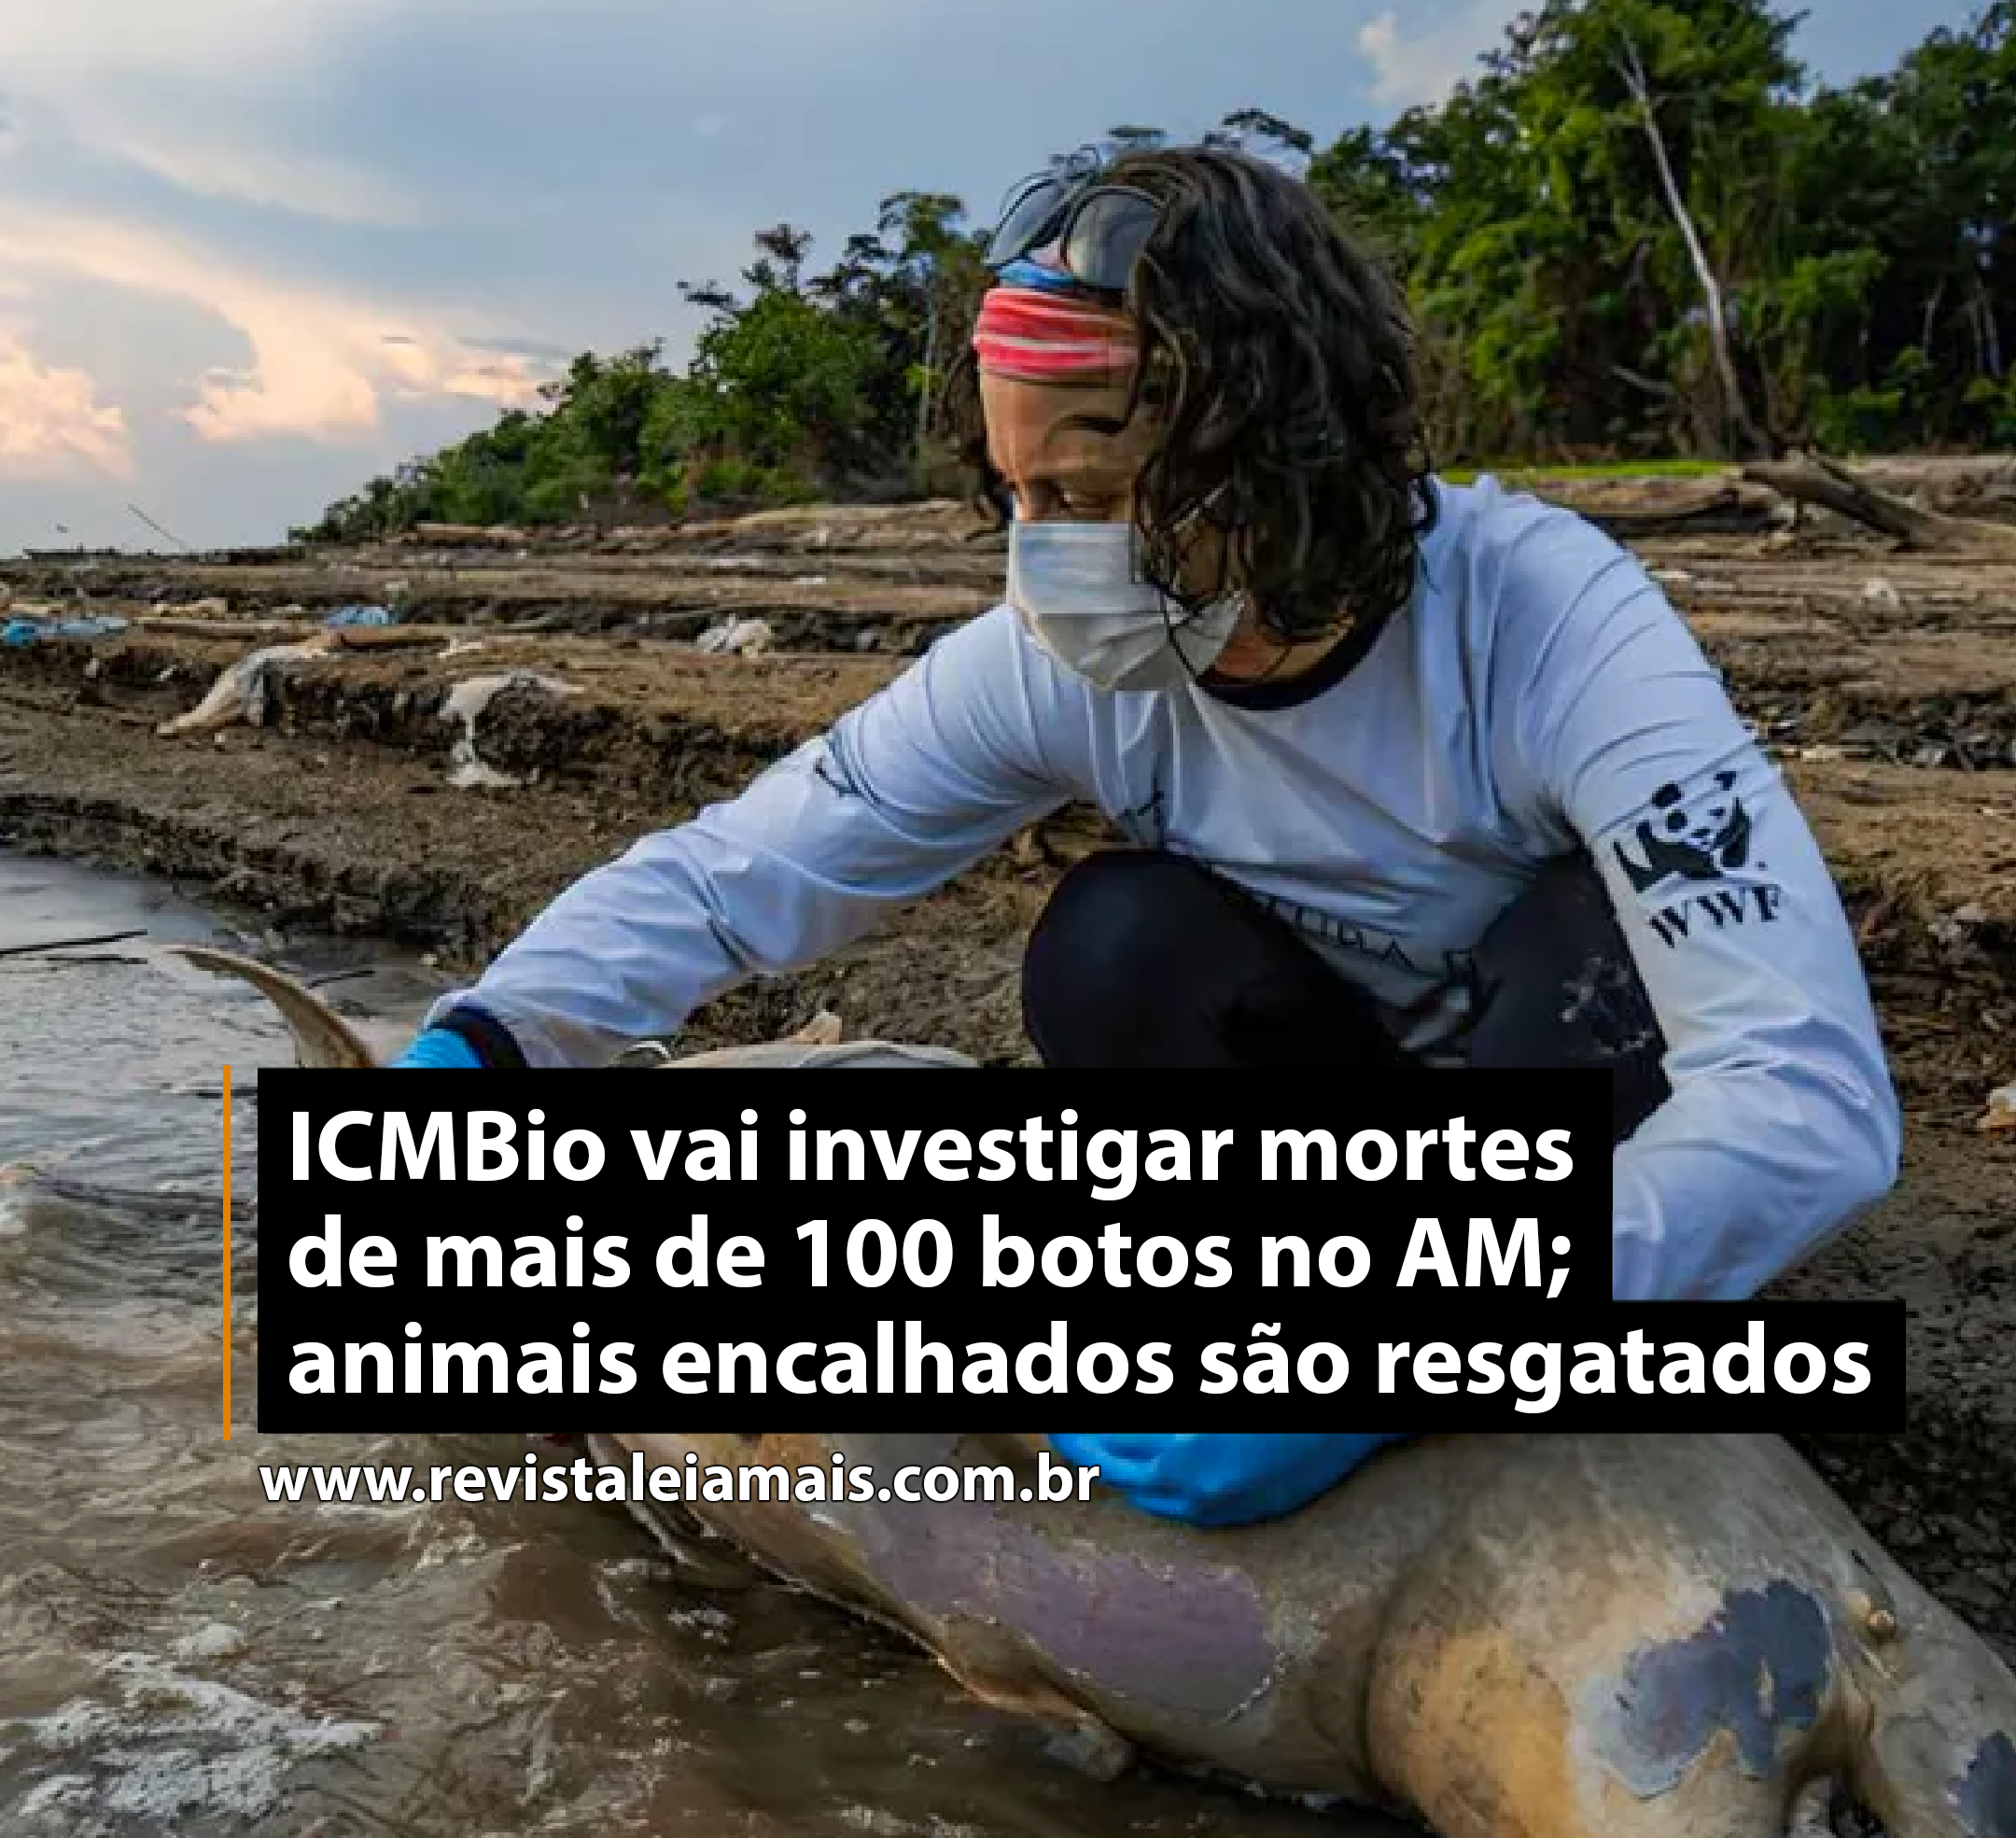 ICMBio vai investigar mortes de mais de 100 botos no AM; animais encalhados são resgatados